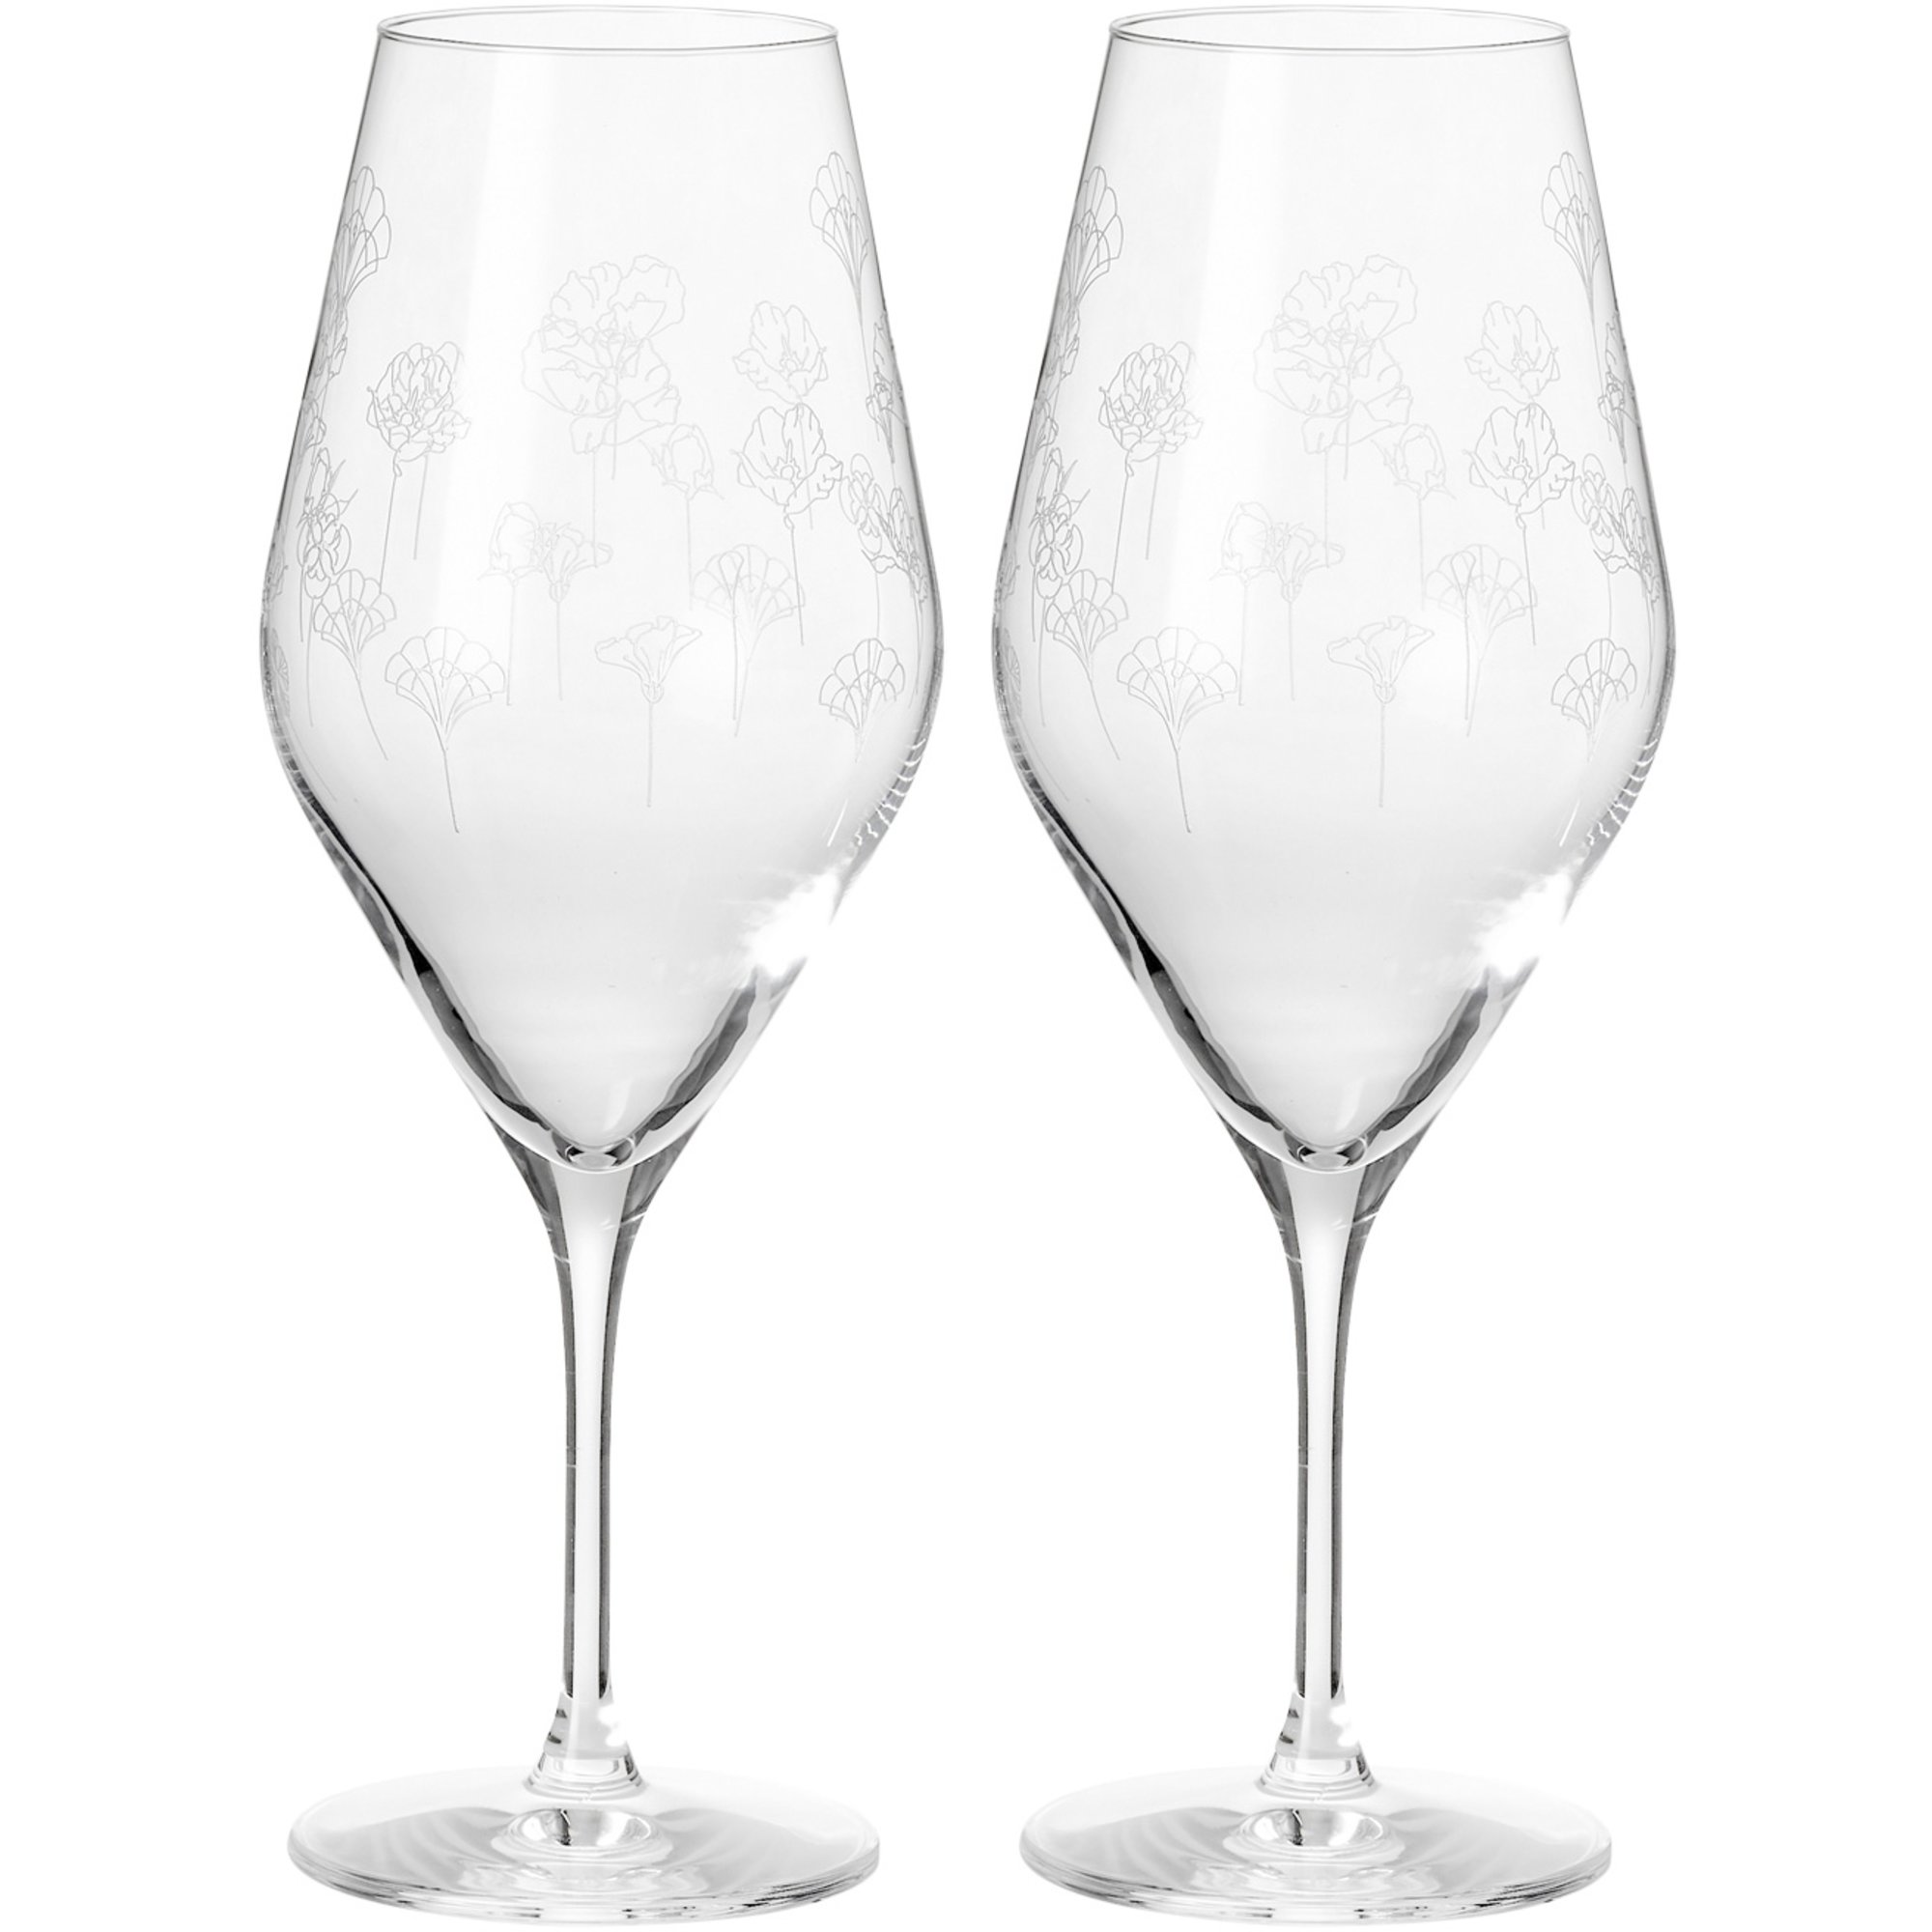 #1 på vores liste over champagneglas er Champagneglas